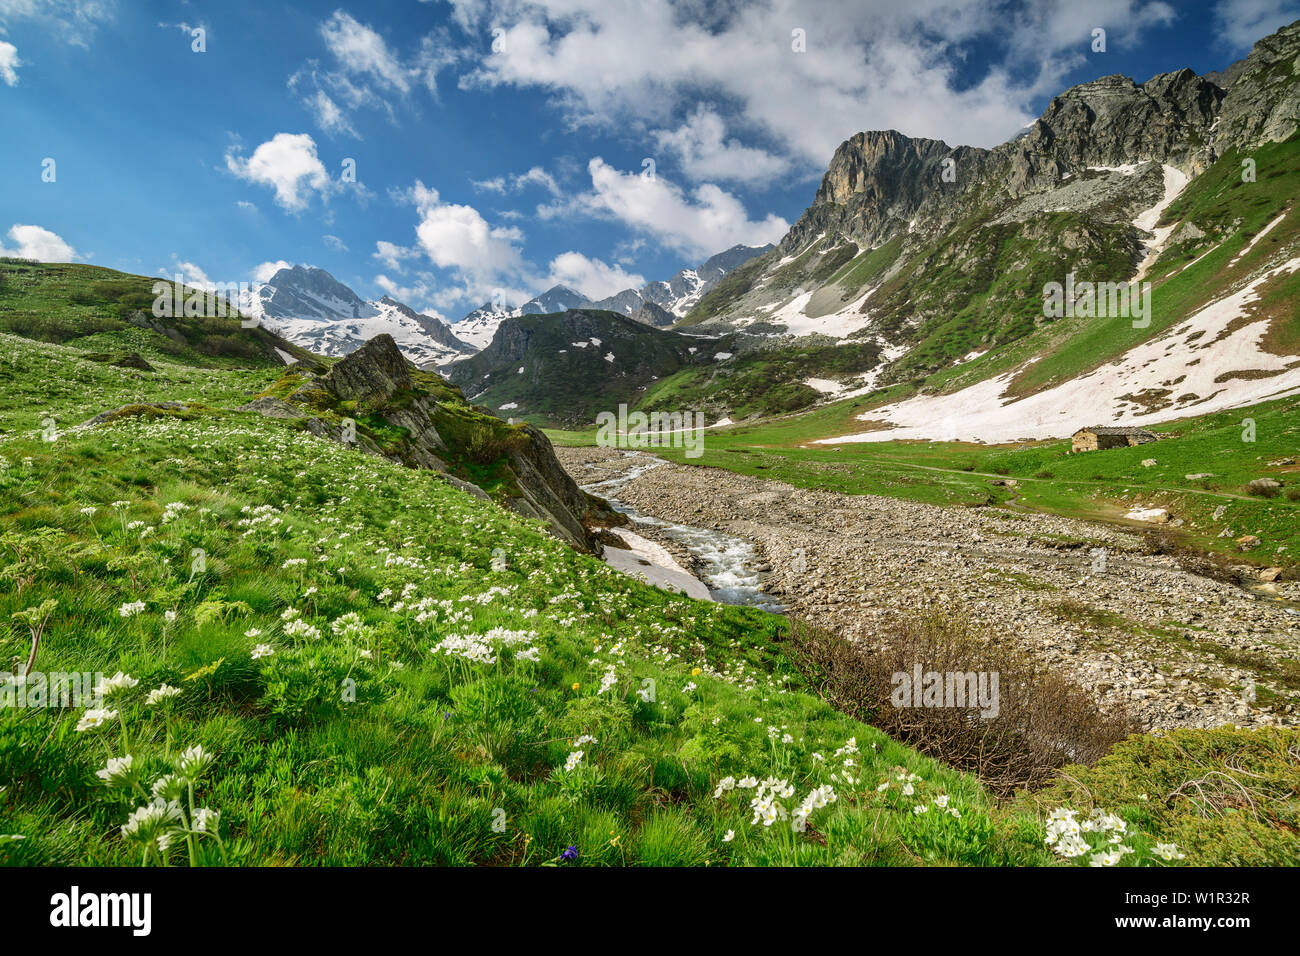 Alpine Anemonen und Narzissen Anemone mit Cottischen Alpen im Hintergrund, das Tal Val Varaita, Cottischen Alpen, Piemont, Italien Stockfoto